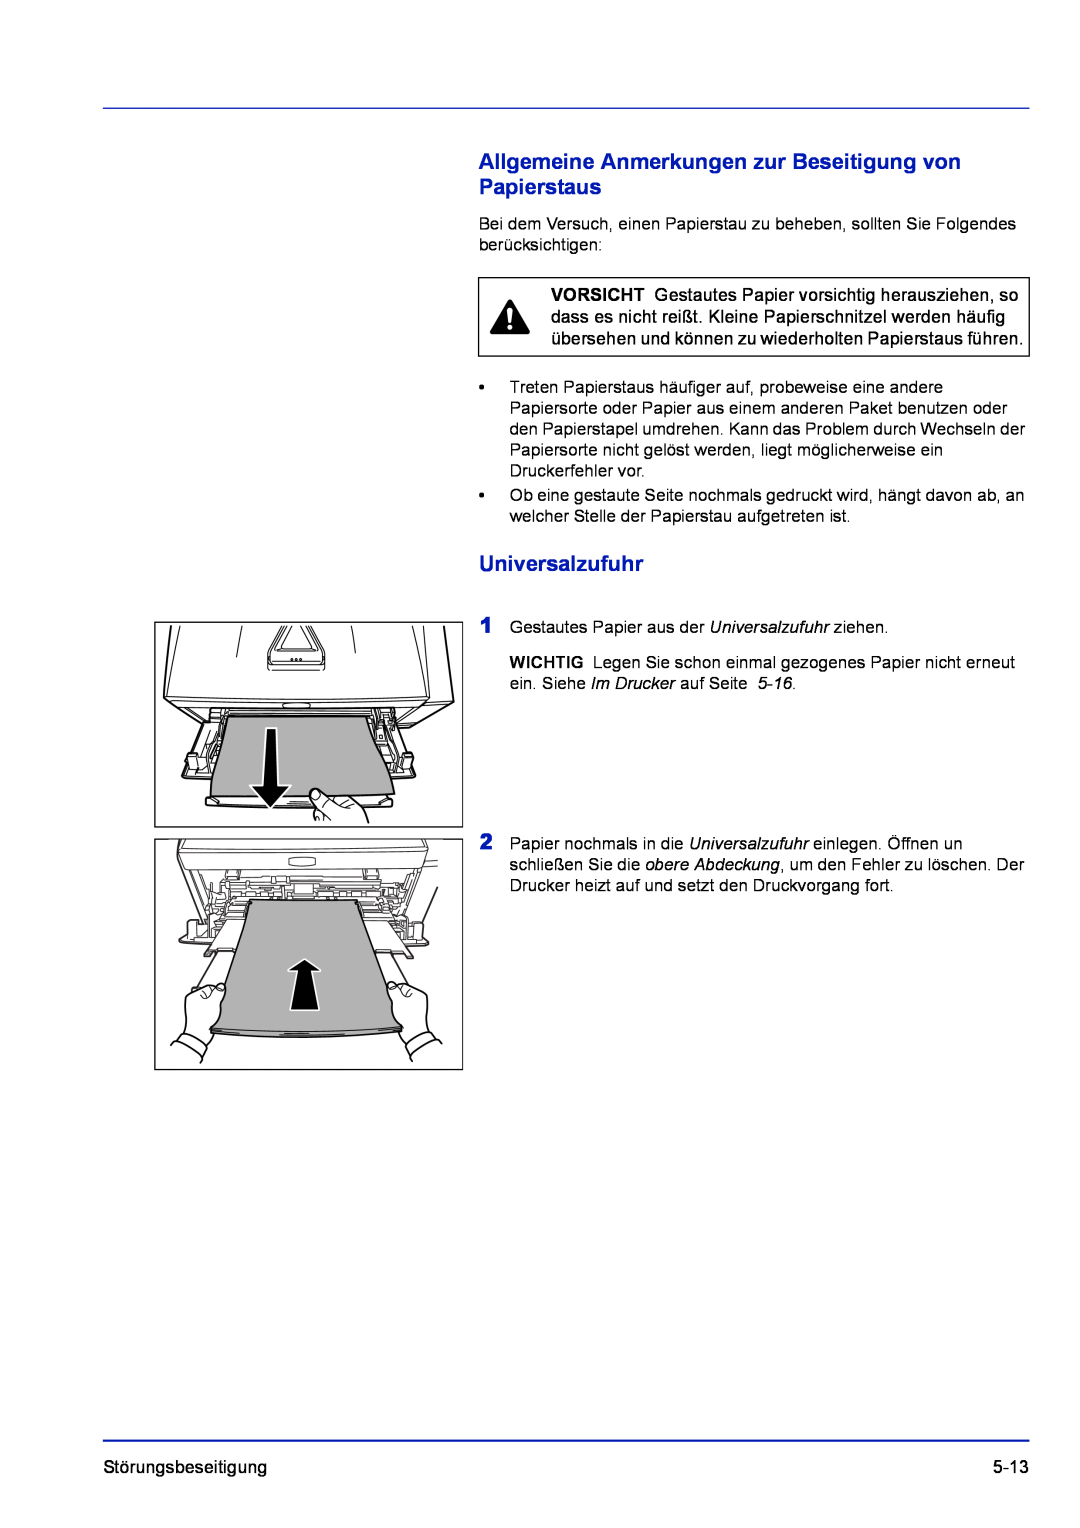 Kyocera FS-1320D, FS-1120D manual Allgemeine Anmerkungen zur Beseitigung von Papierstaus, Universalzufuhr 